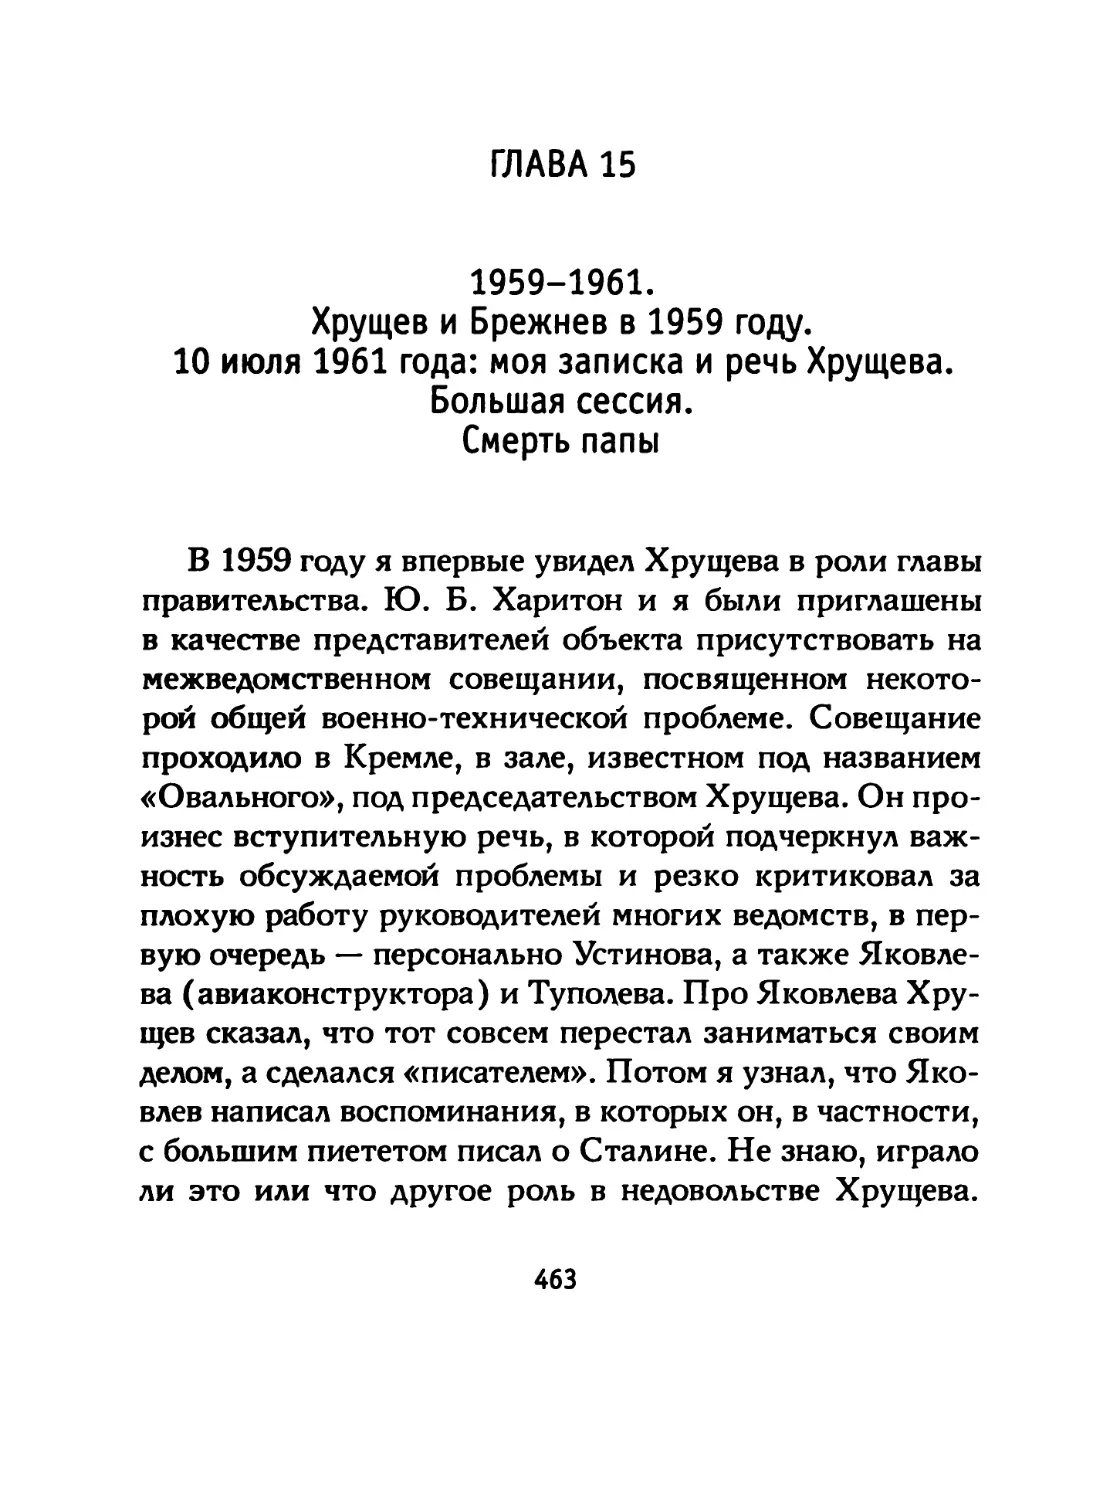 ГЛАВА 15 1959-1961. Хрущев и Брежнев в 1959 году. 10 июля 1961 года: моя записка и речь Хрущева. Большая сессия. Смерть папы